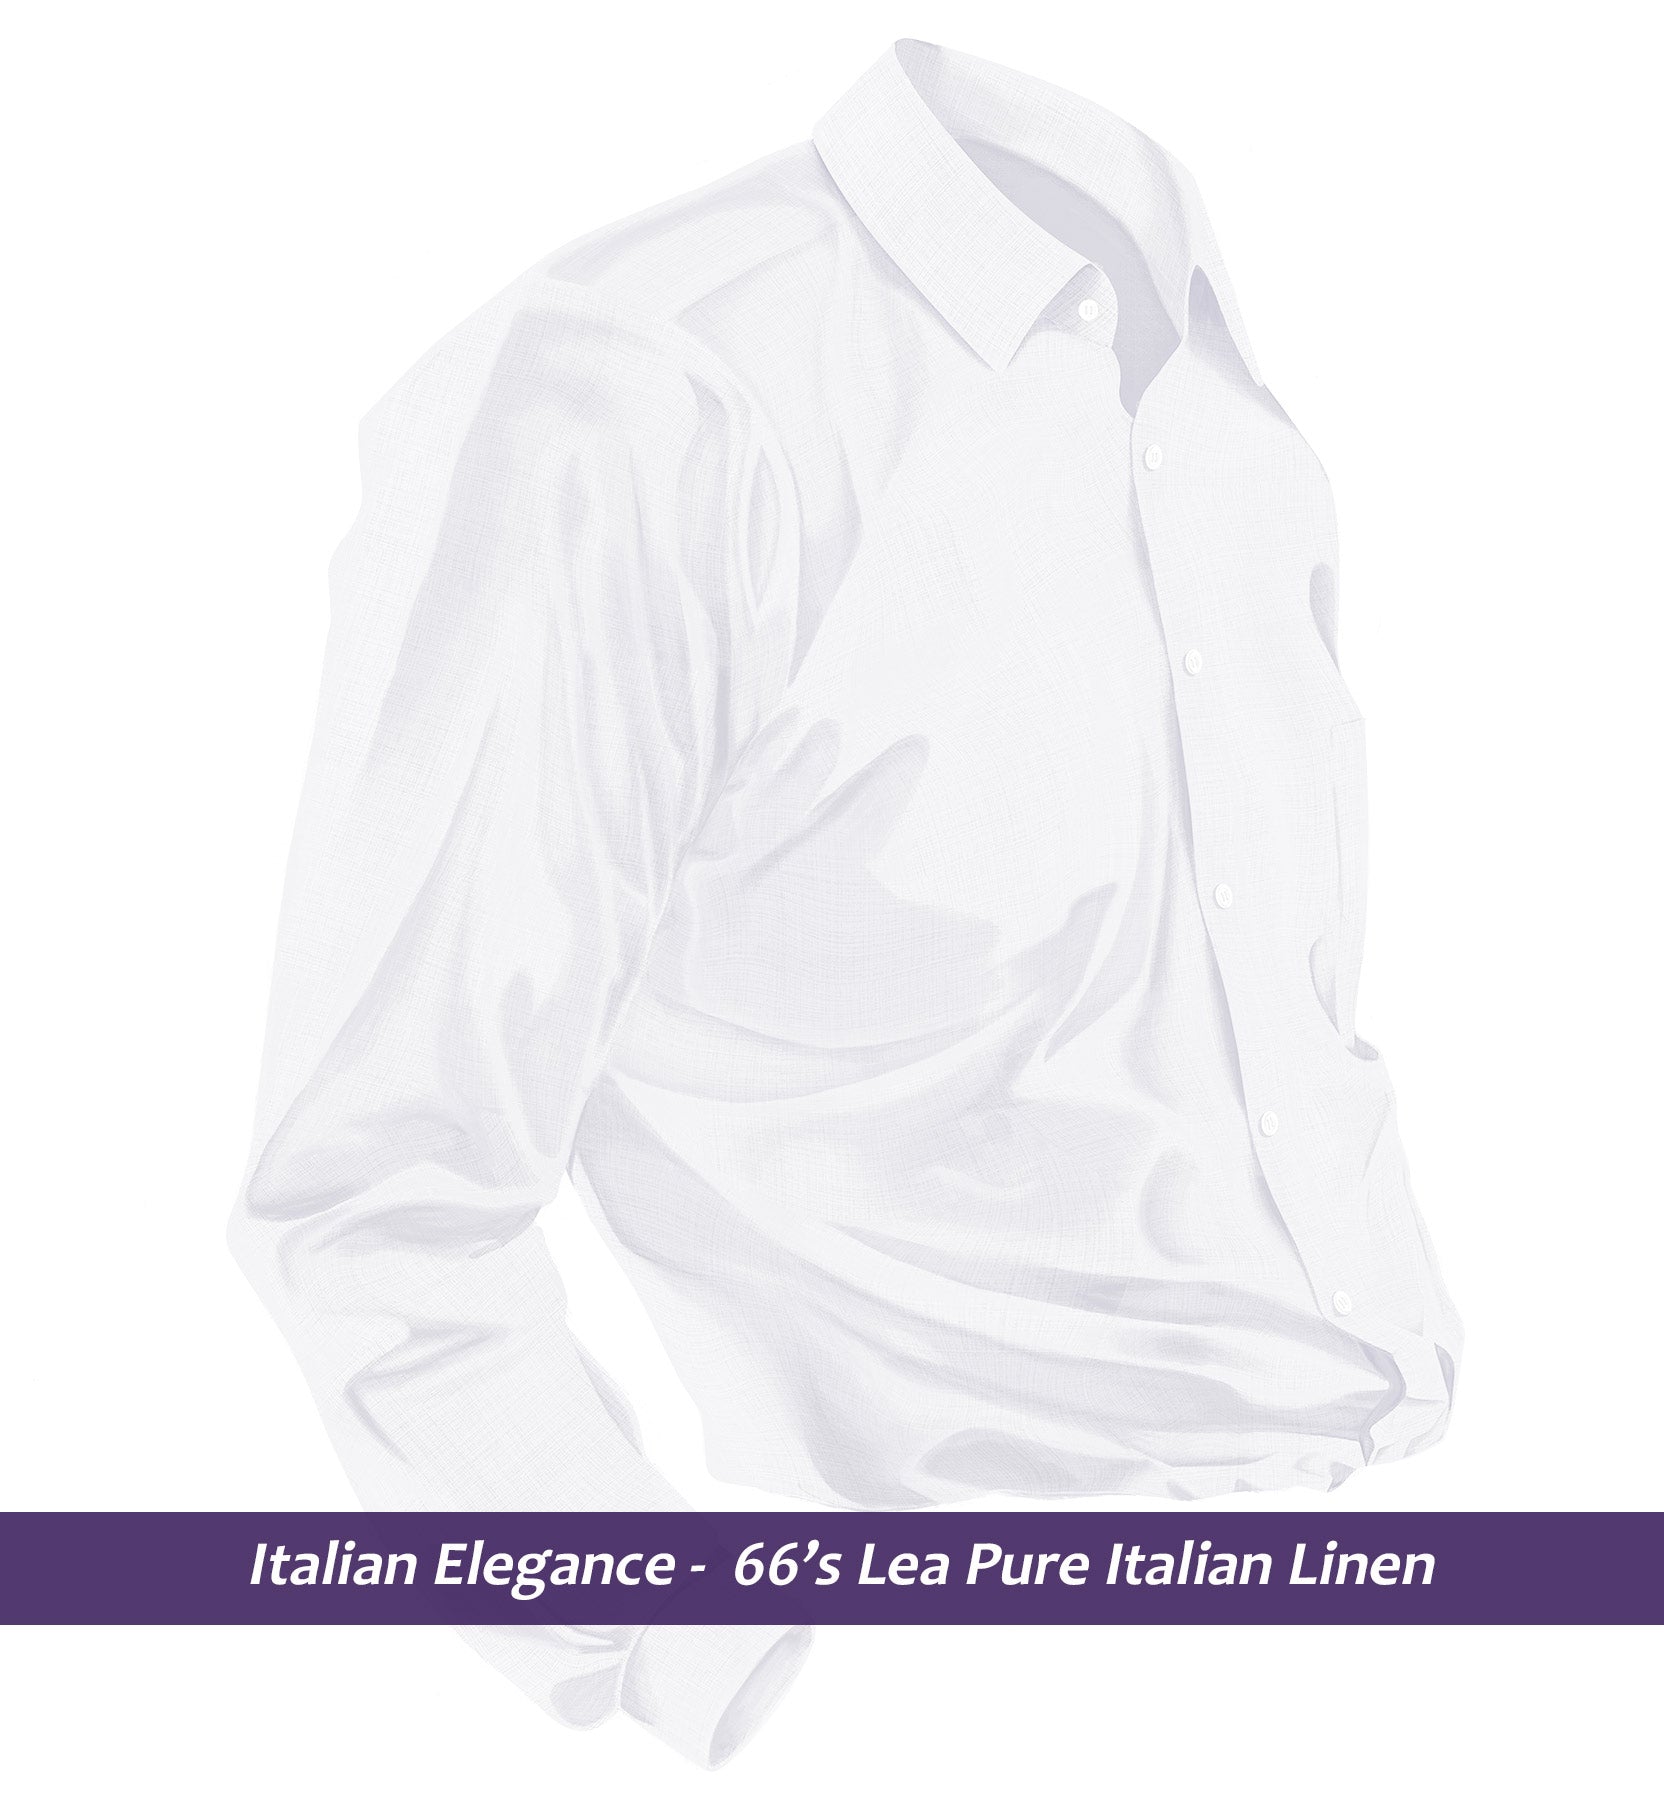 Vatican- Pristine Pure White Linen- 88's Lea Pure Italian Linen- Delivery from 4th Dec